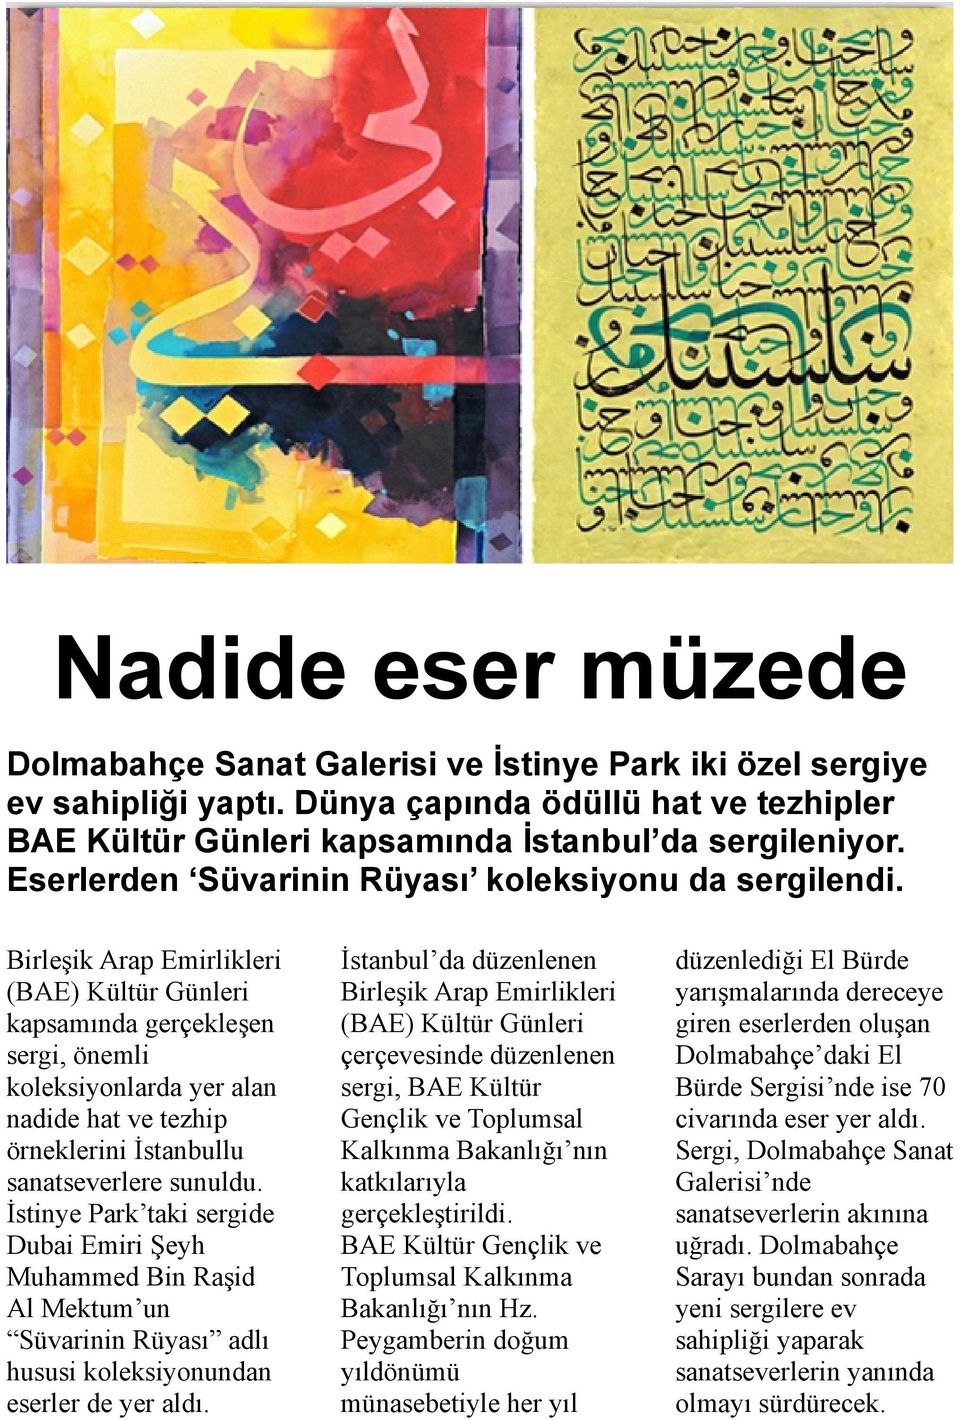 Birleşik Arap Emirlikleri (BAE) Kültür Günleri kapsamında gerçekleşen sergi, önemli koleksiyonlarda yer alan nadide hat ve tezhip örneklerini İstanbullu sanatseverlere sunuldu.